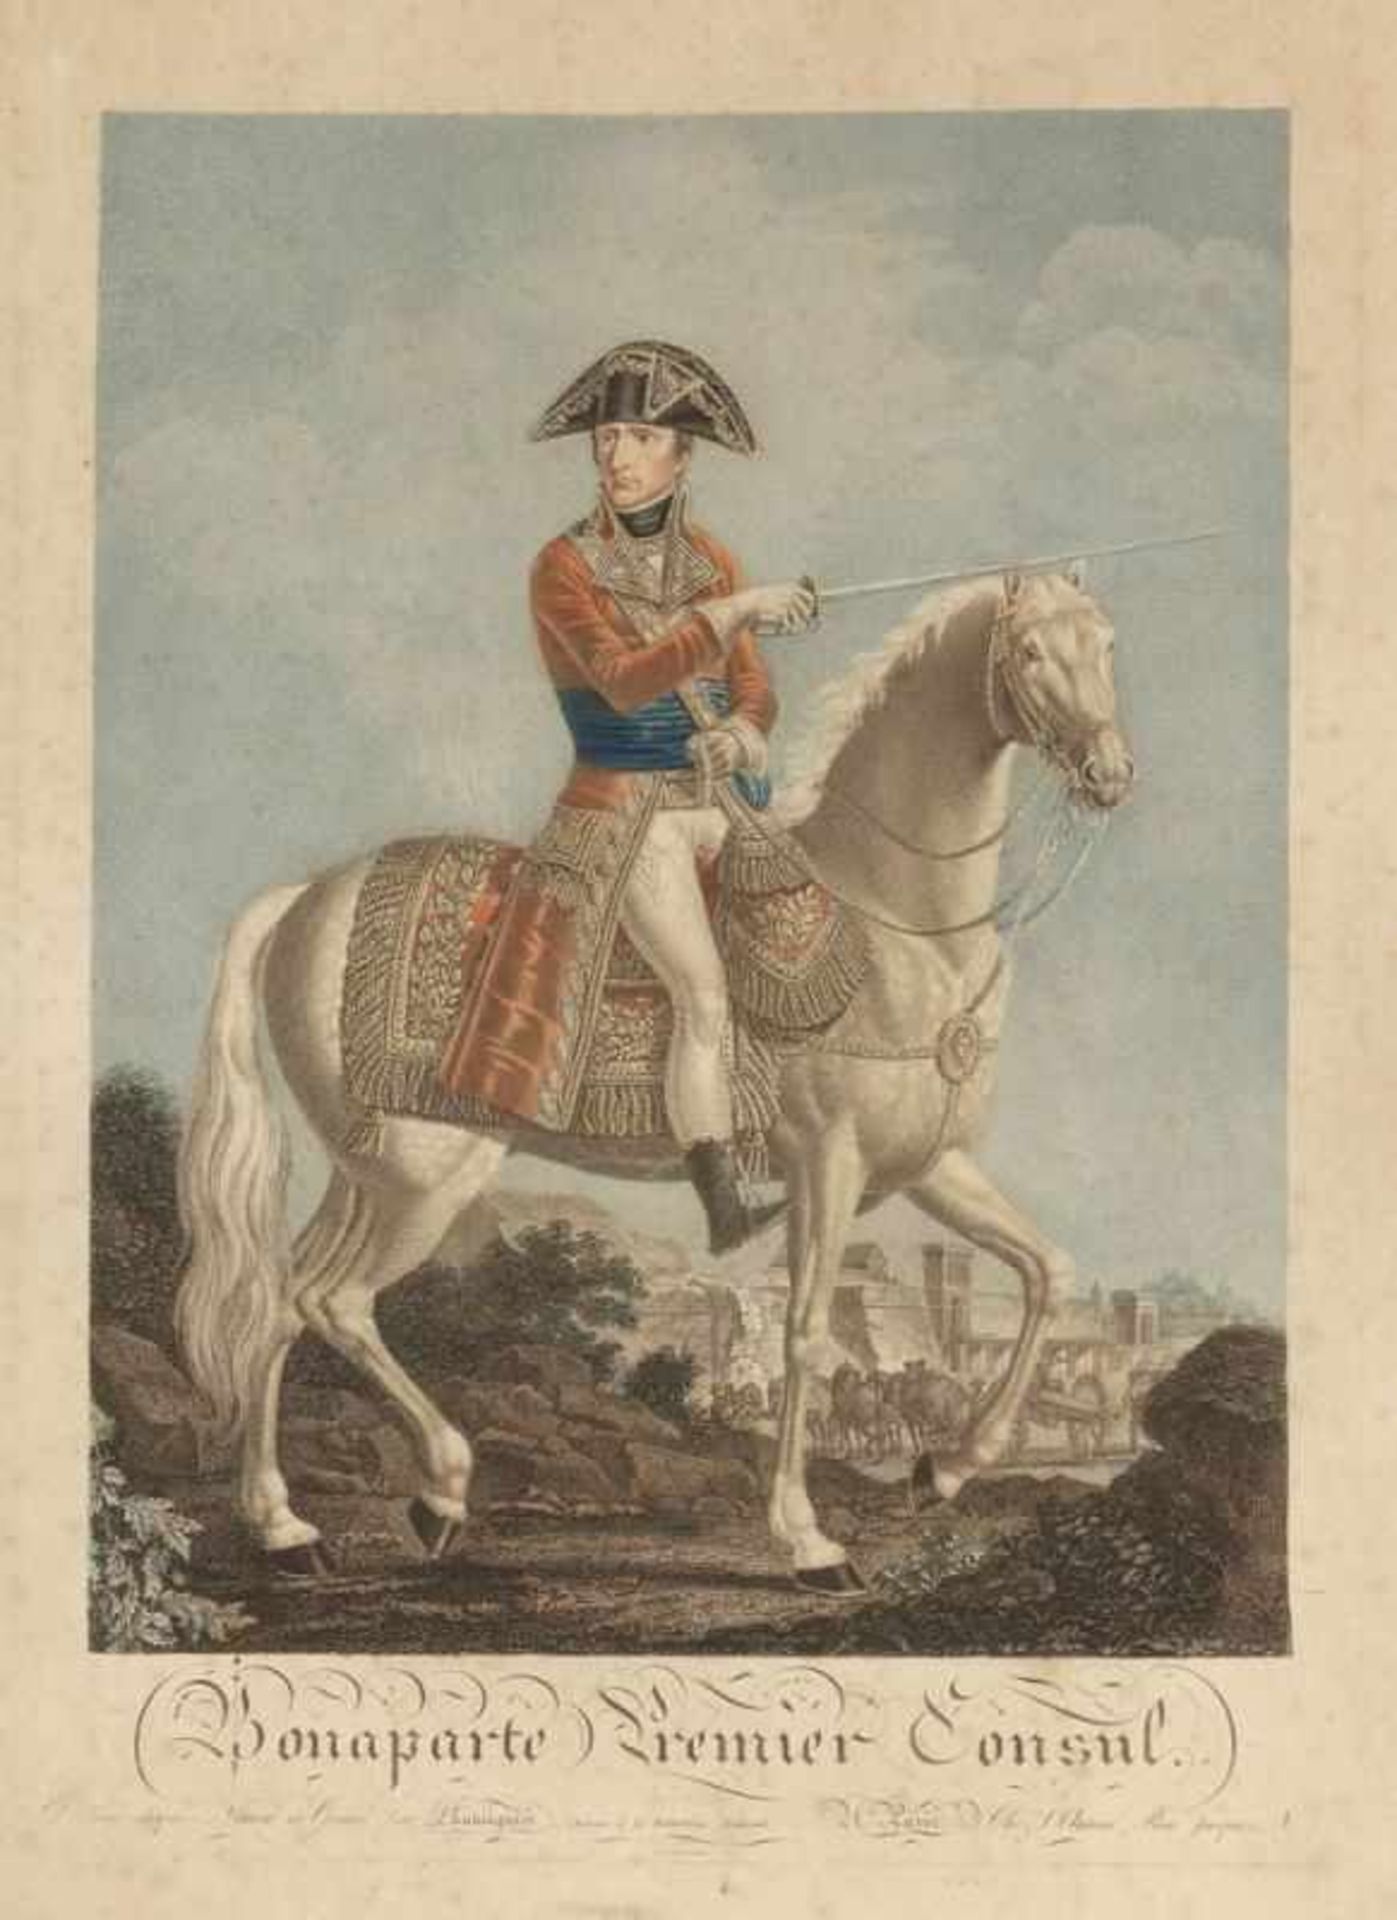 Alexis Chatagnier Grafiker des 19. Jahrhunderts. - "Bonaparte Premier Consul" - Punktierstich. 40